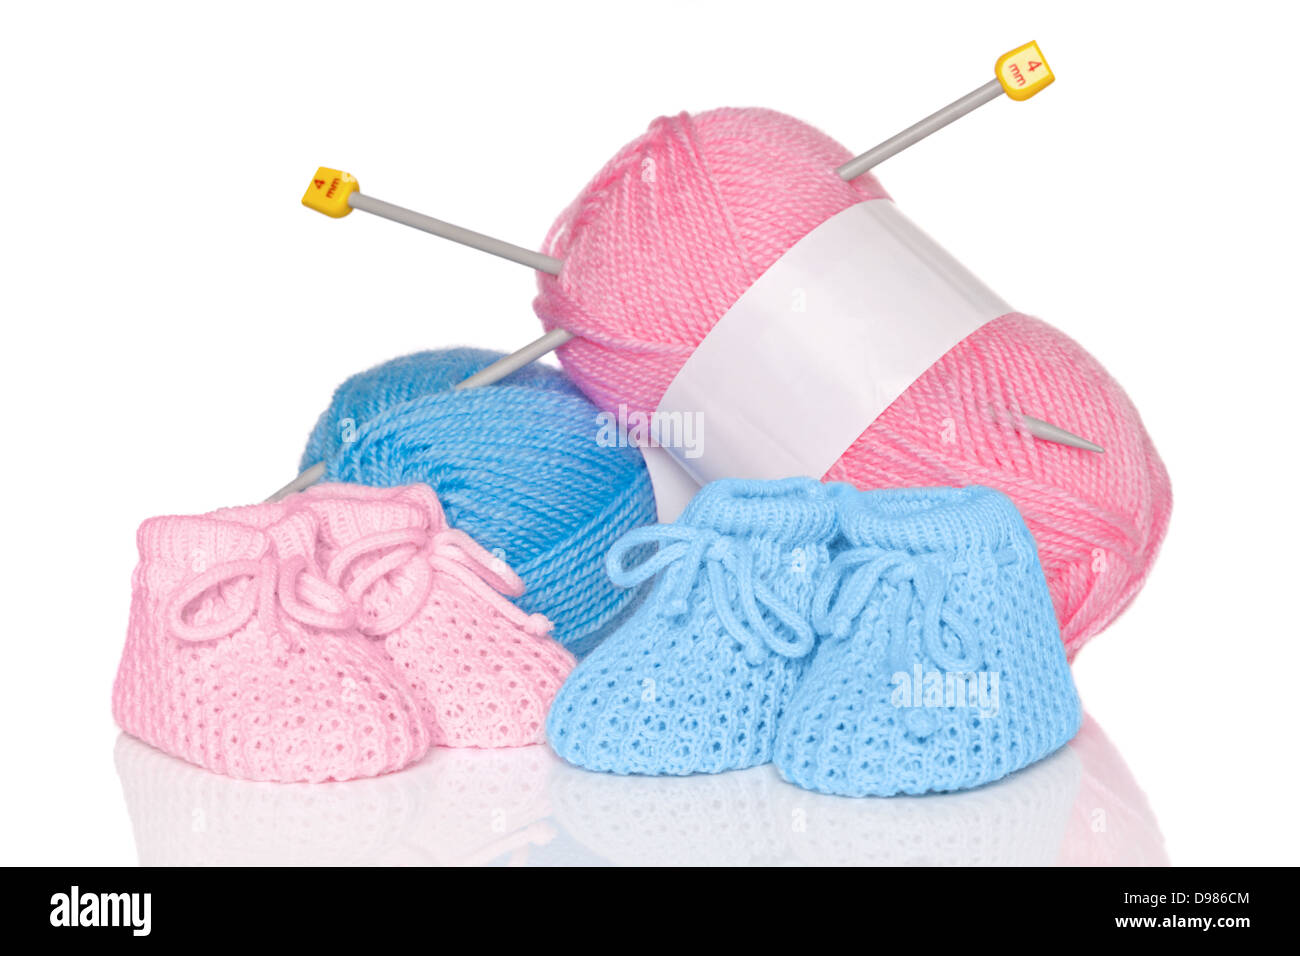 Chaussons pour bébé tricotés avec la laine rose et bleu et des aiguilles à  tricoter, isolé sur un fond blanc Photo Stock - Alamy